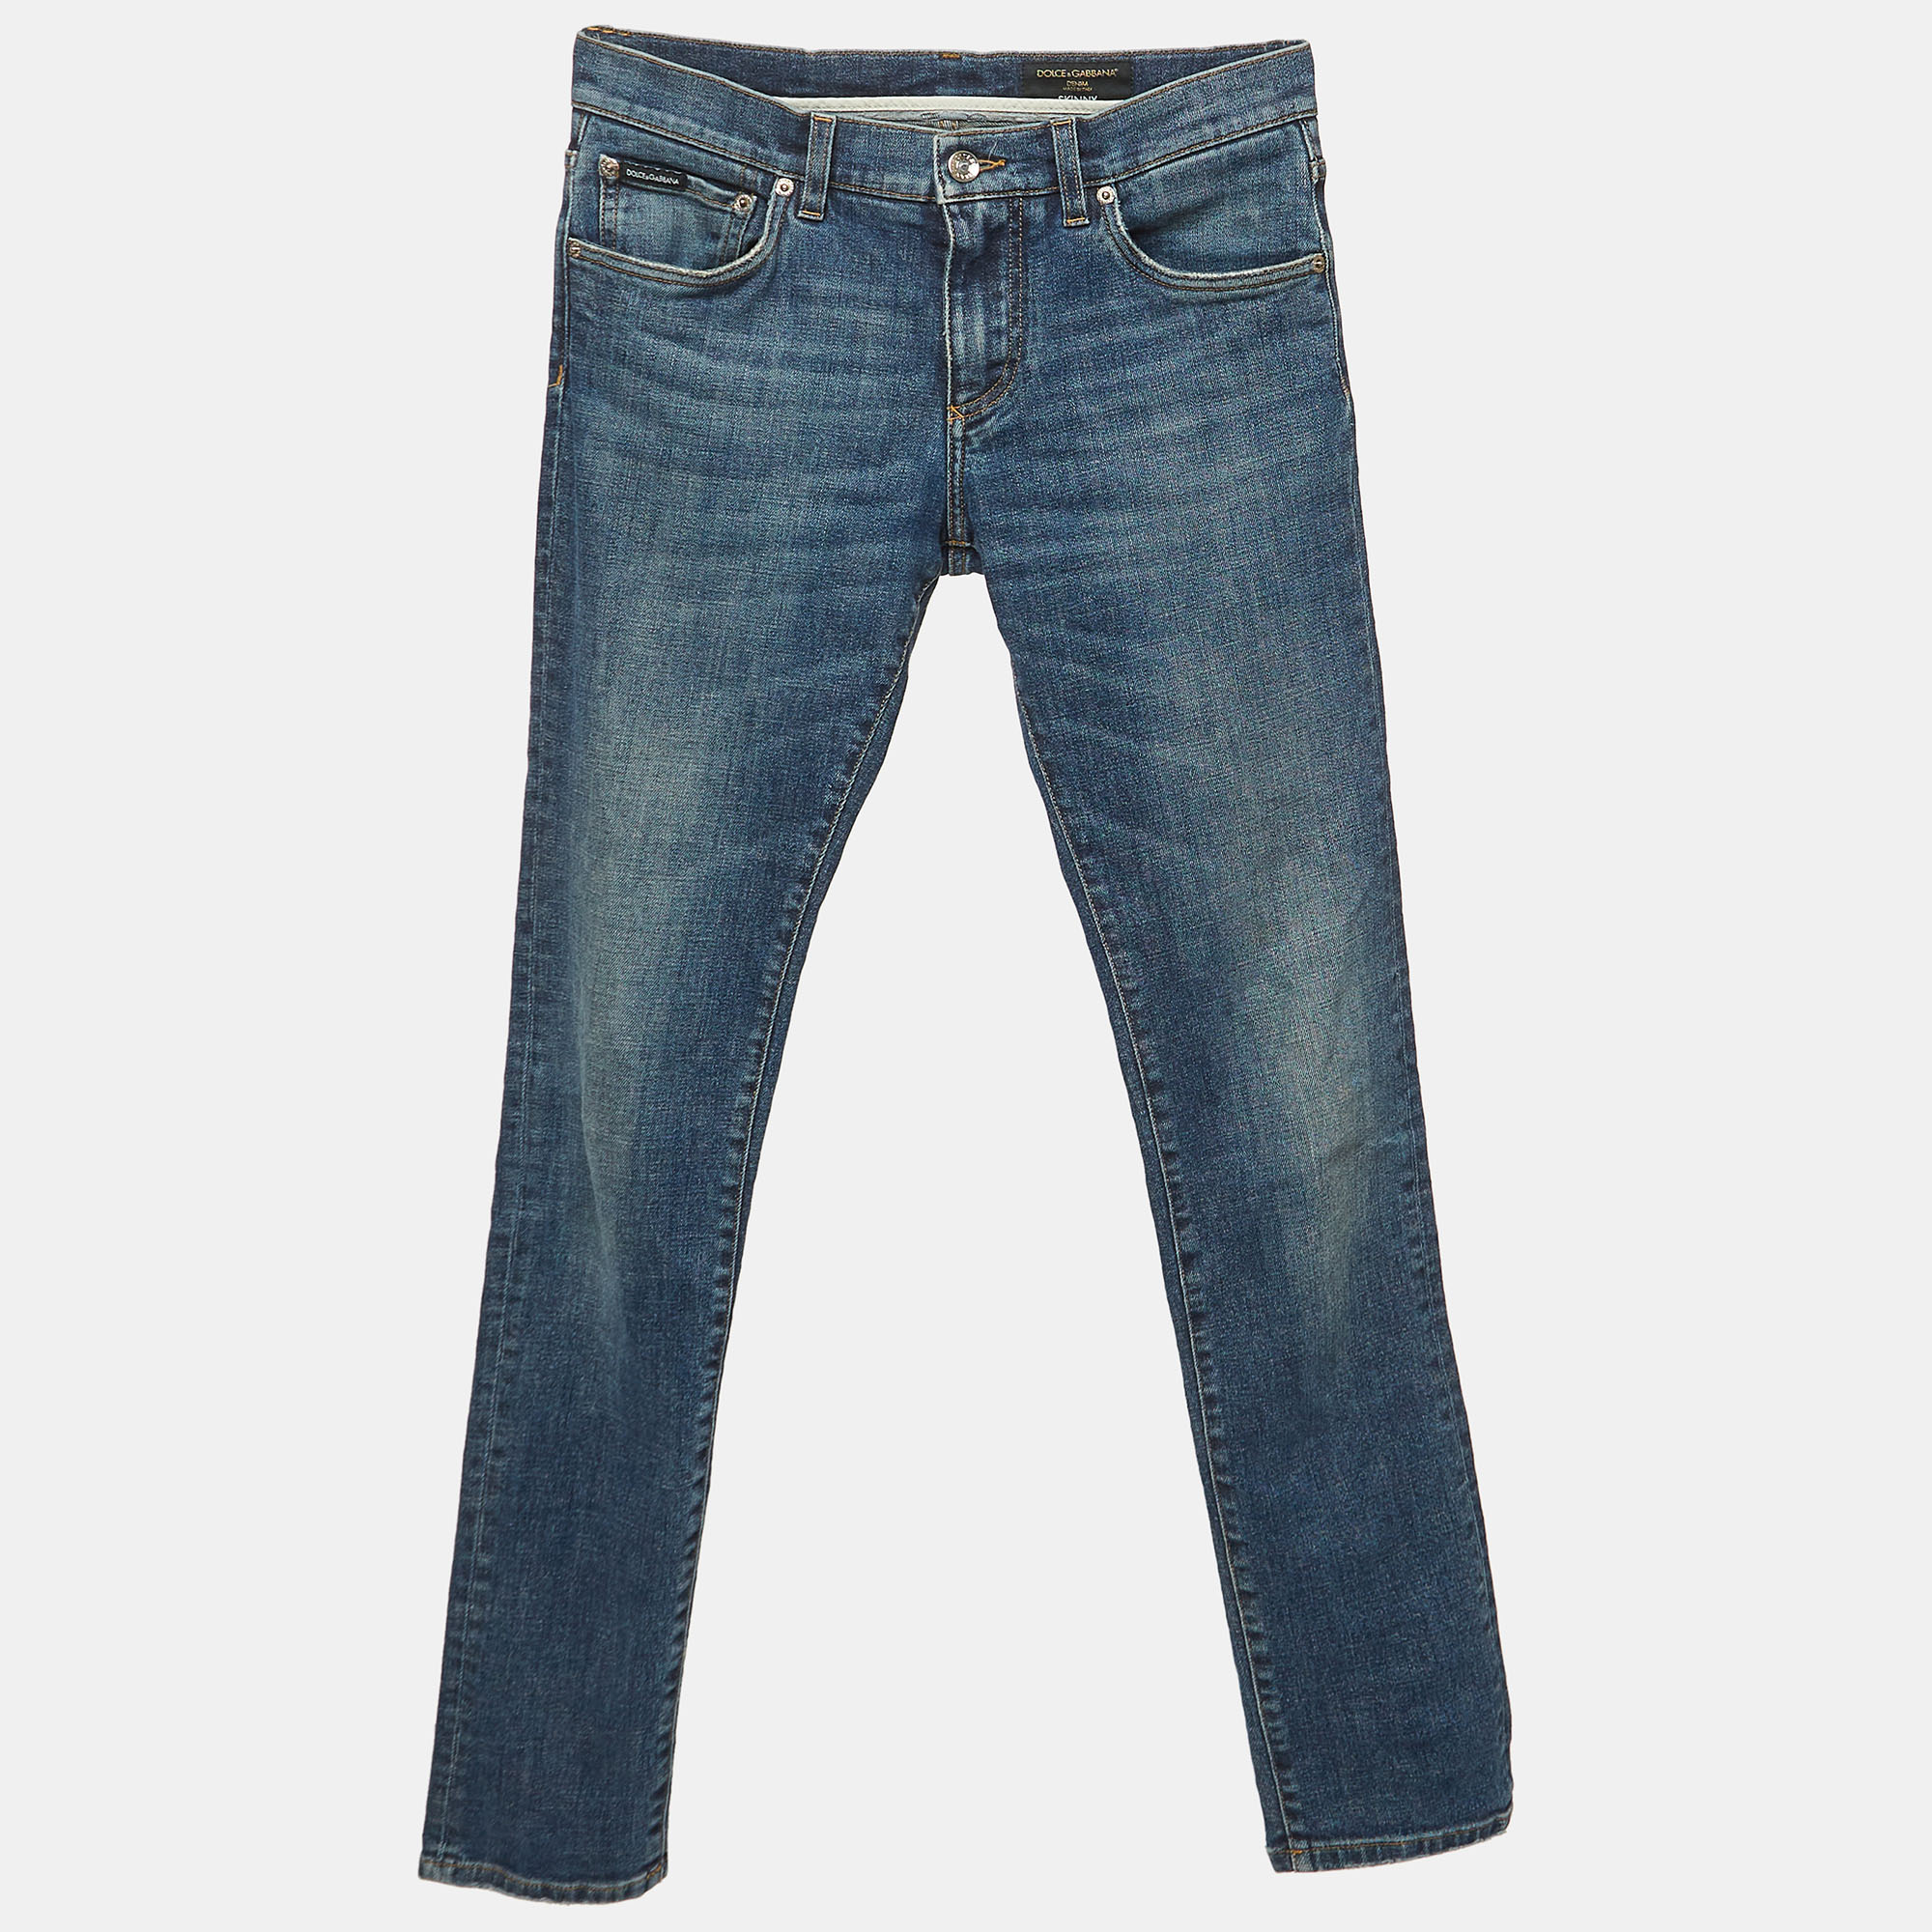 

Dolce & Gabbana Blue Denim Skinny Jeans S Waist 46"